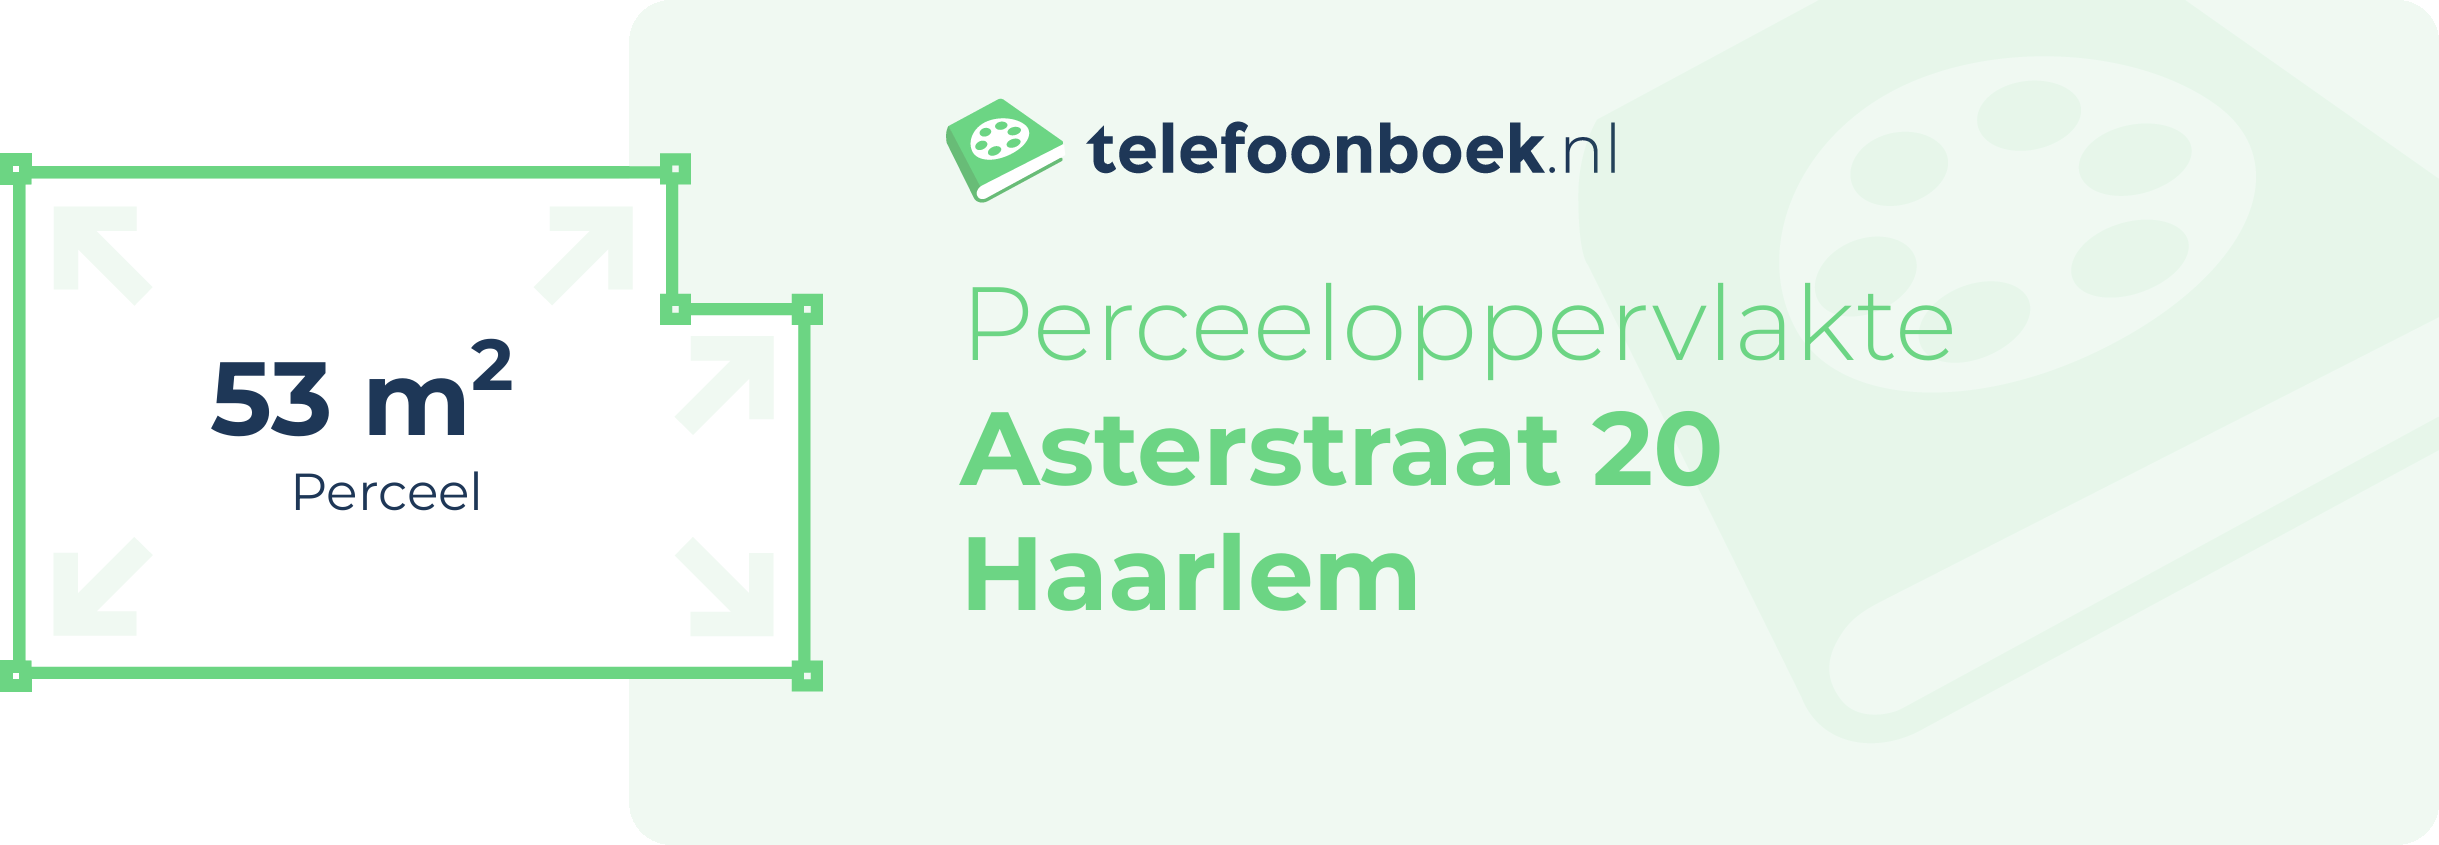 Perceeloppervlakte Asterstraat 20 Haarlem